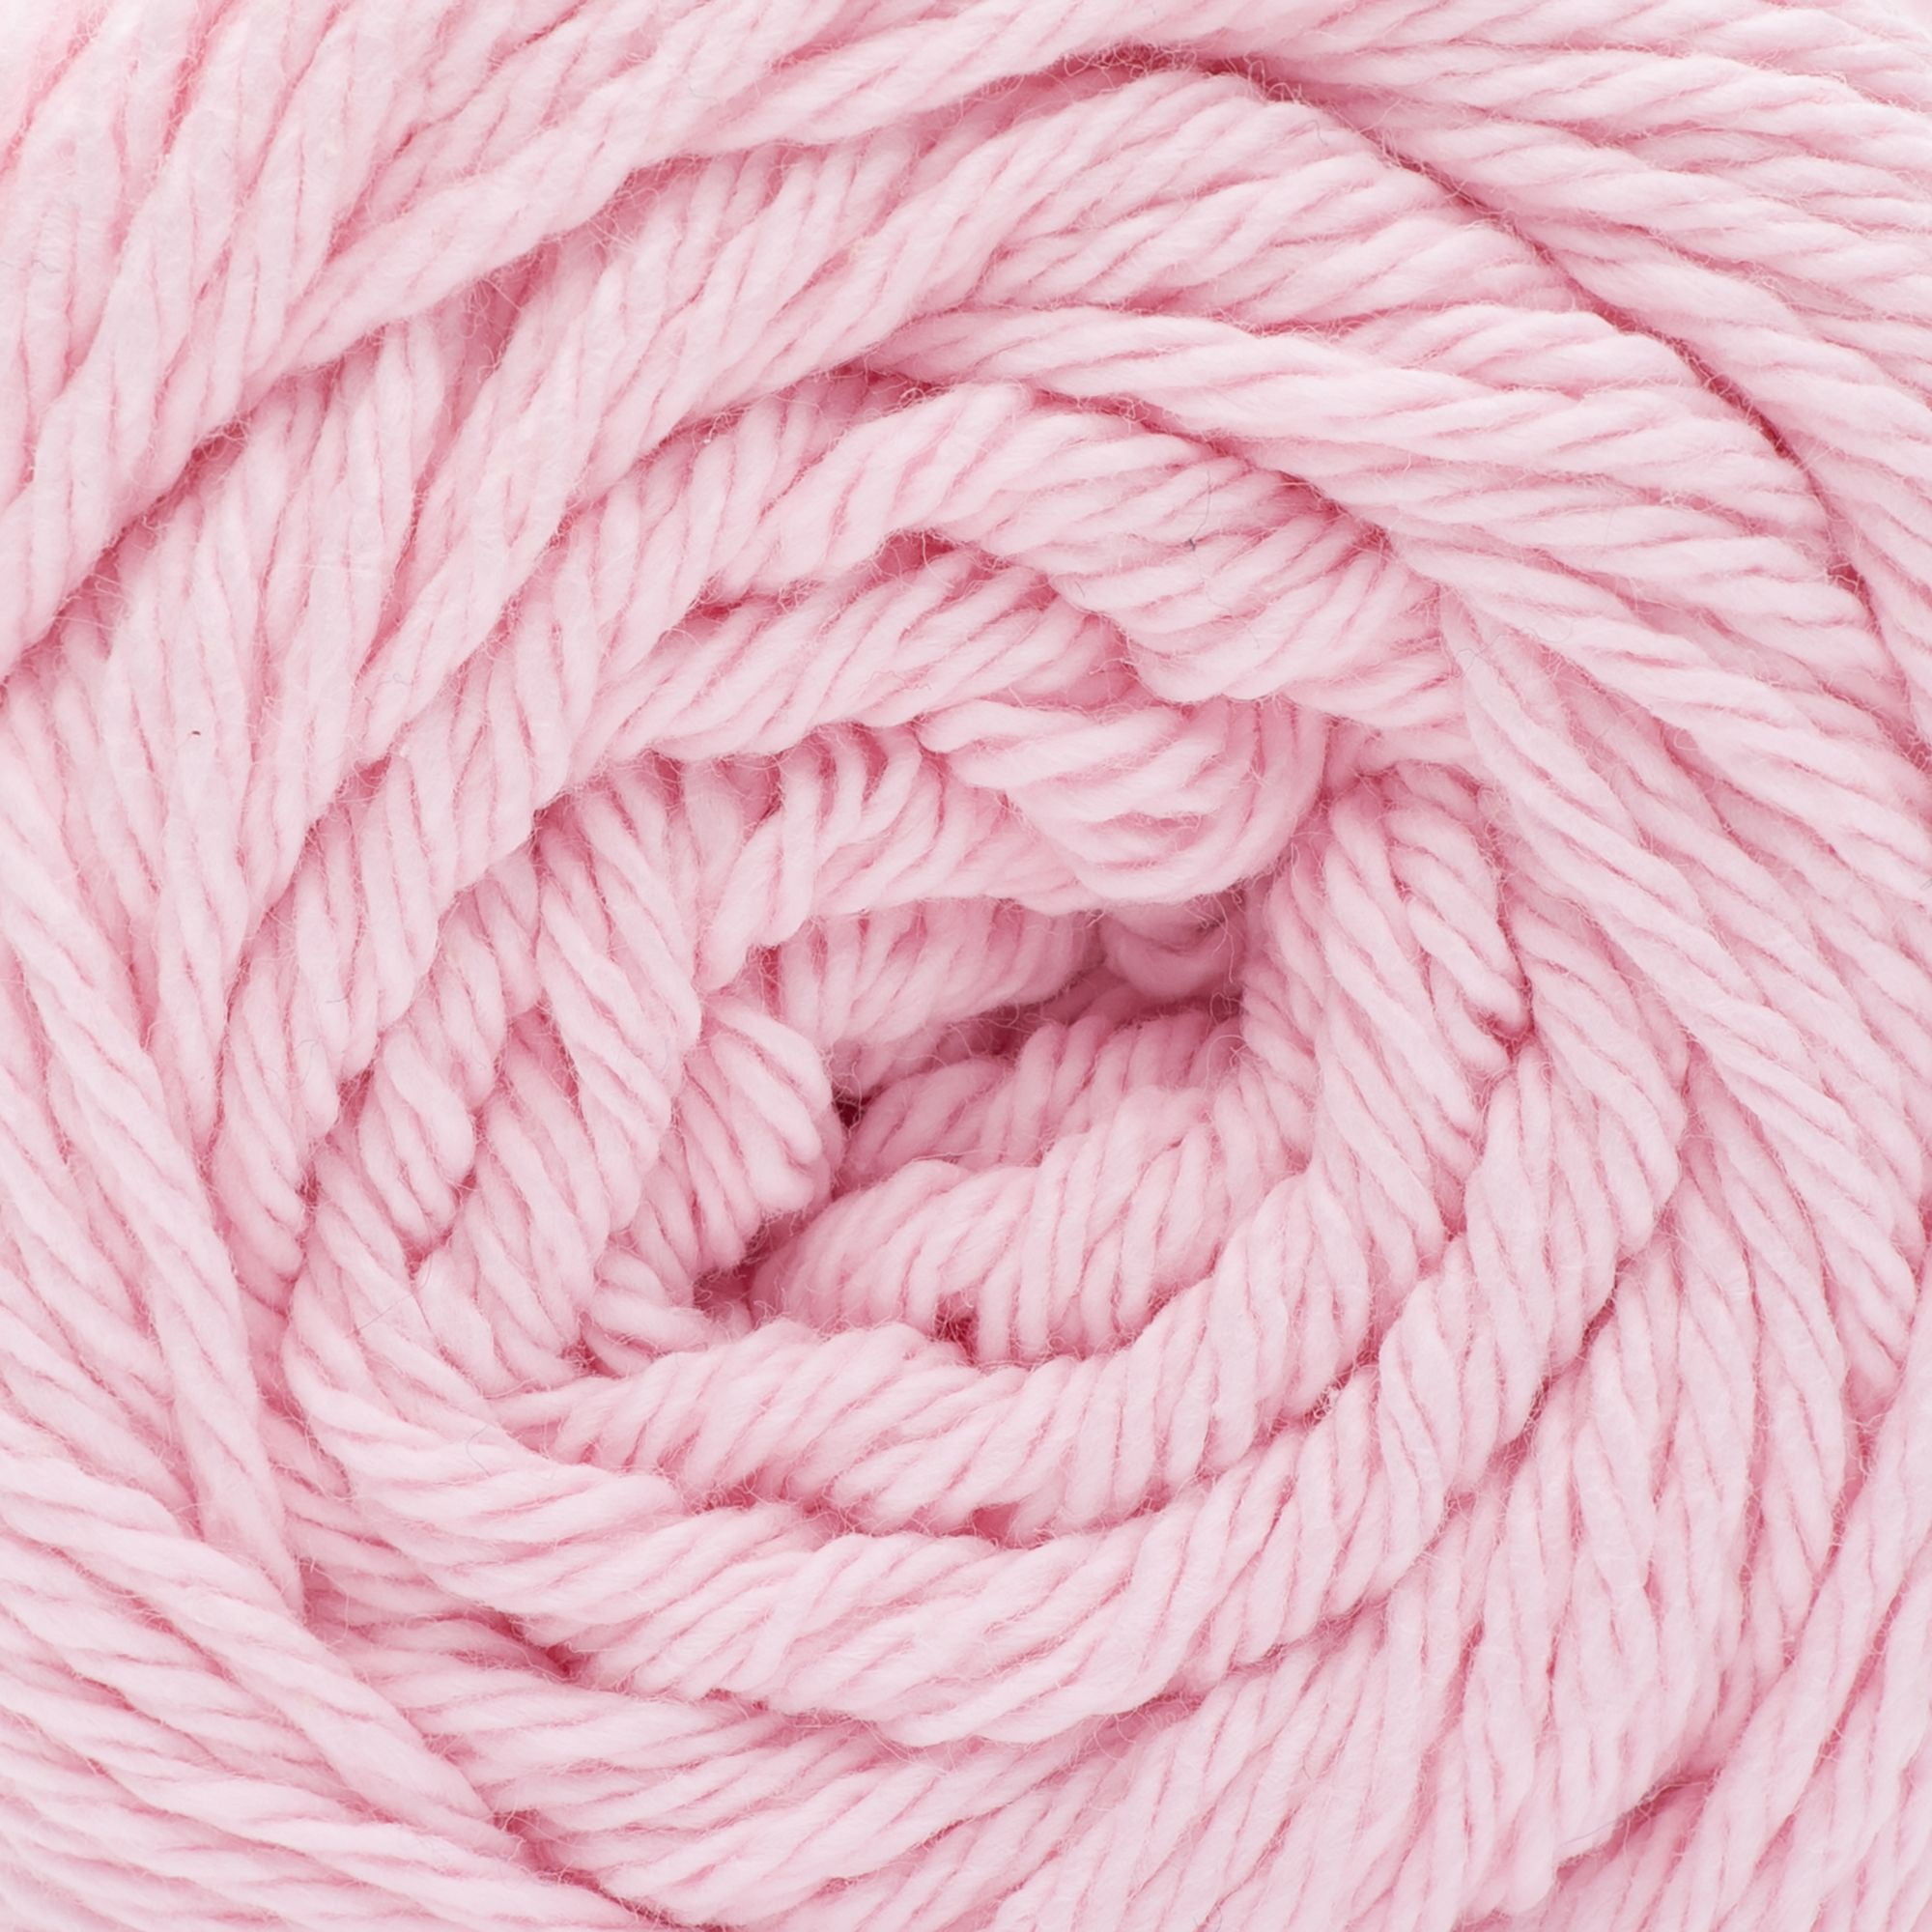 Peaches & Creme™ #4 Medium Cotton Yarn, Pastel Pink 2.5oz/70.9g, 120 Yards  (15 Pack)